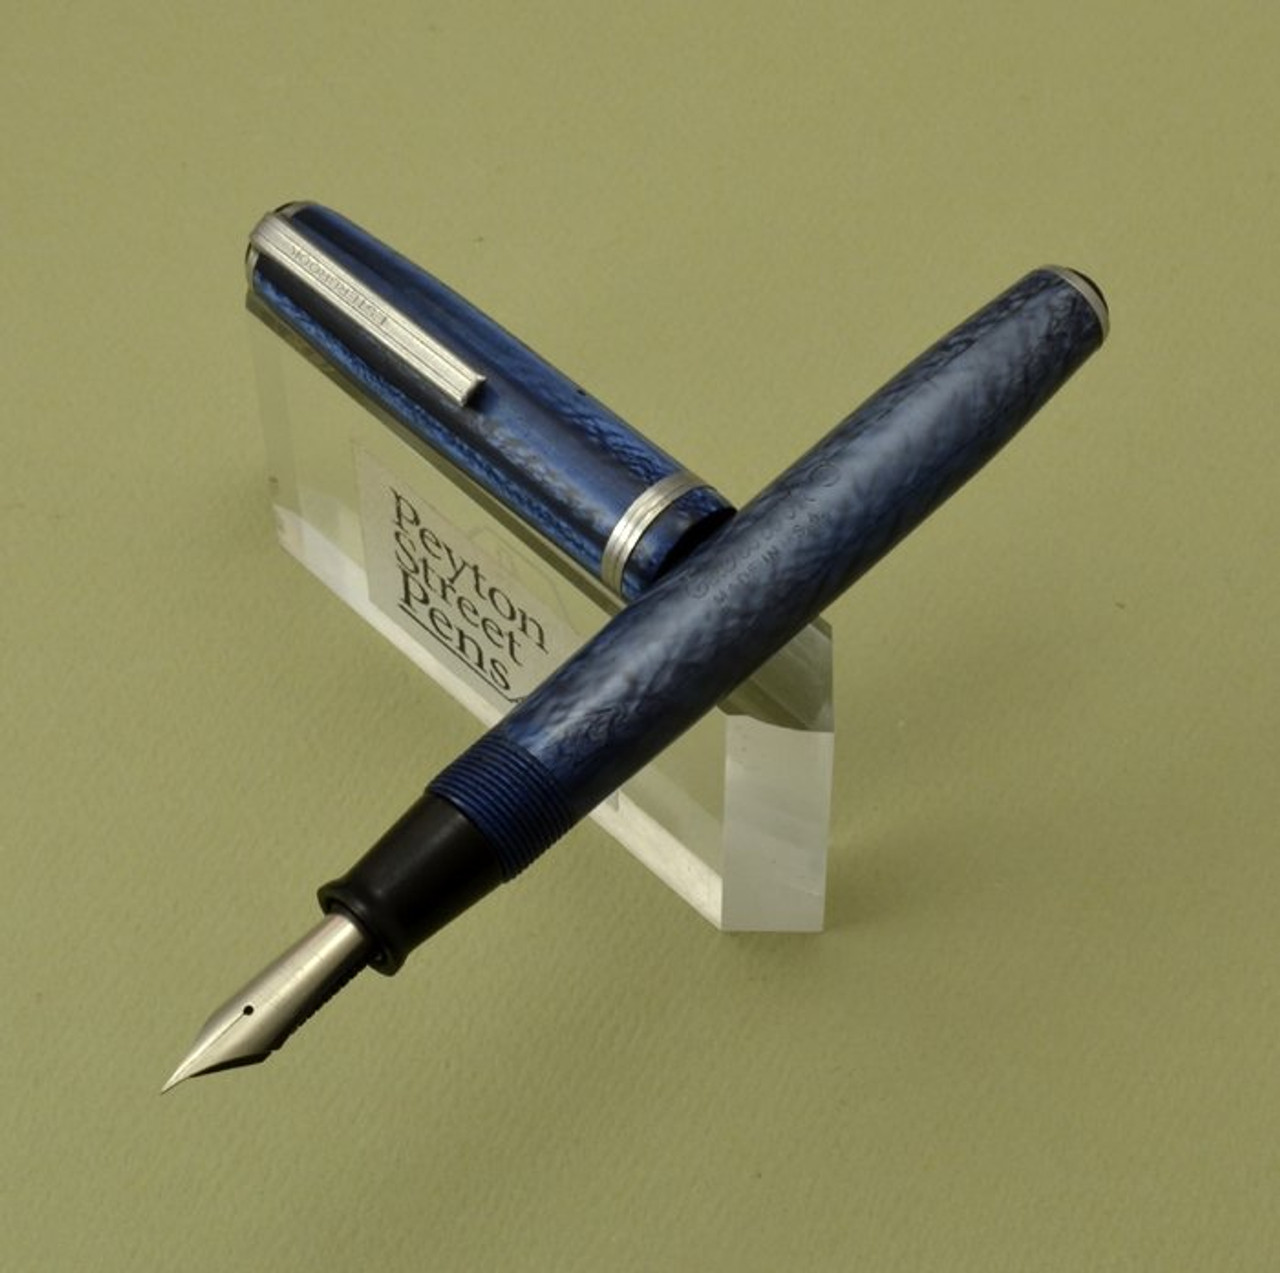 Esterbrook J Fountain Pen - Blue, 2550 Extra Fine (Restored)